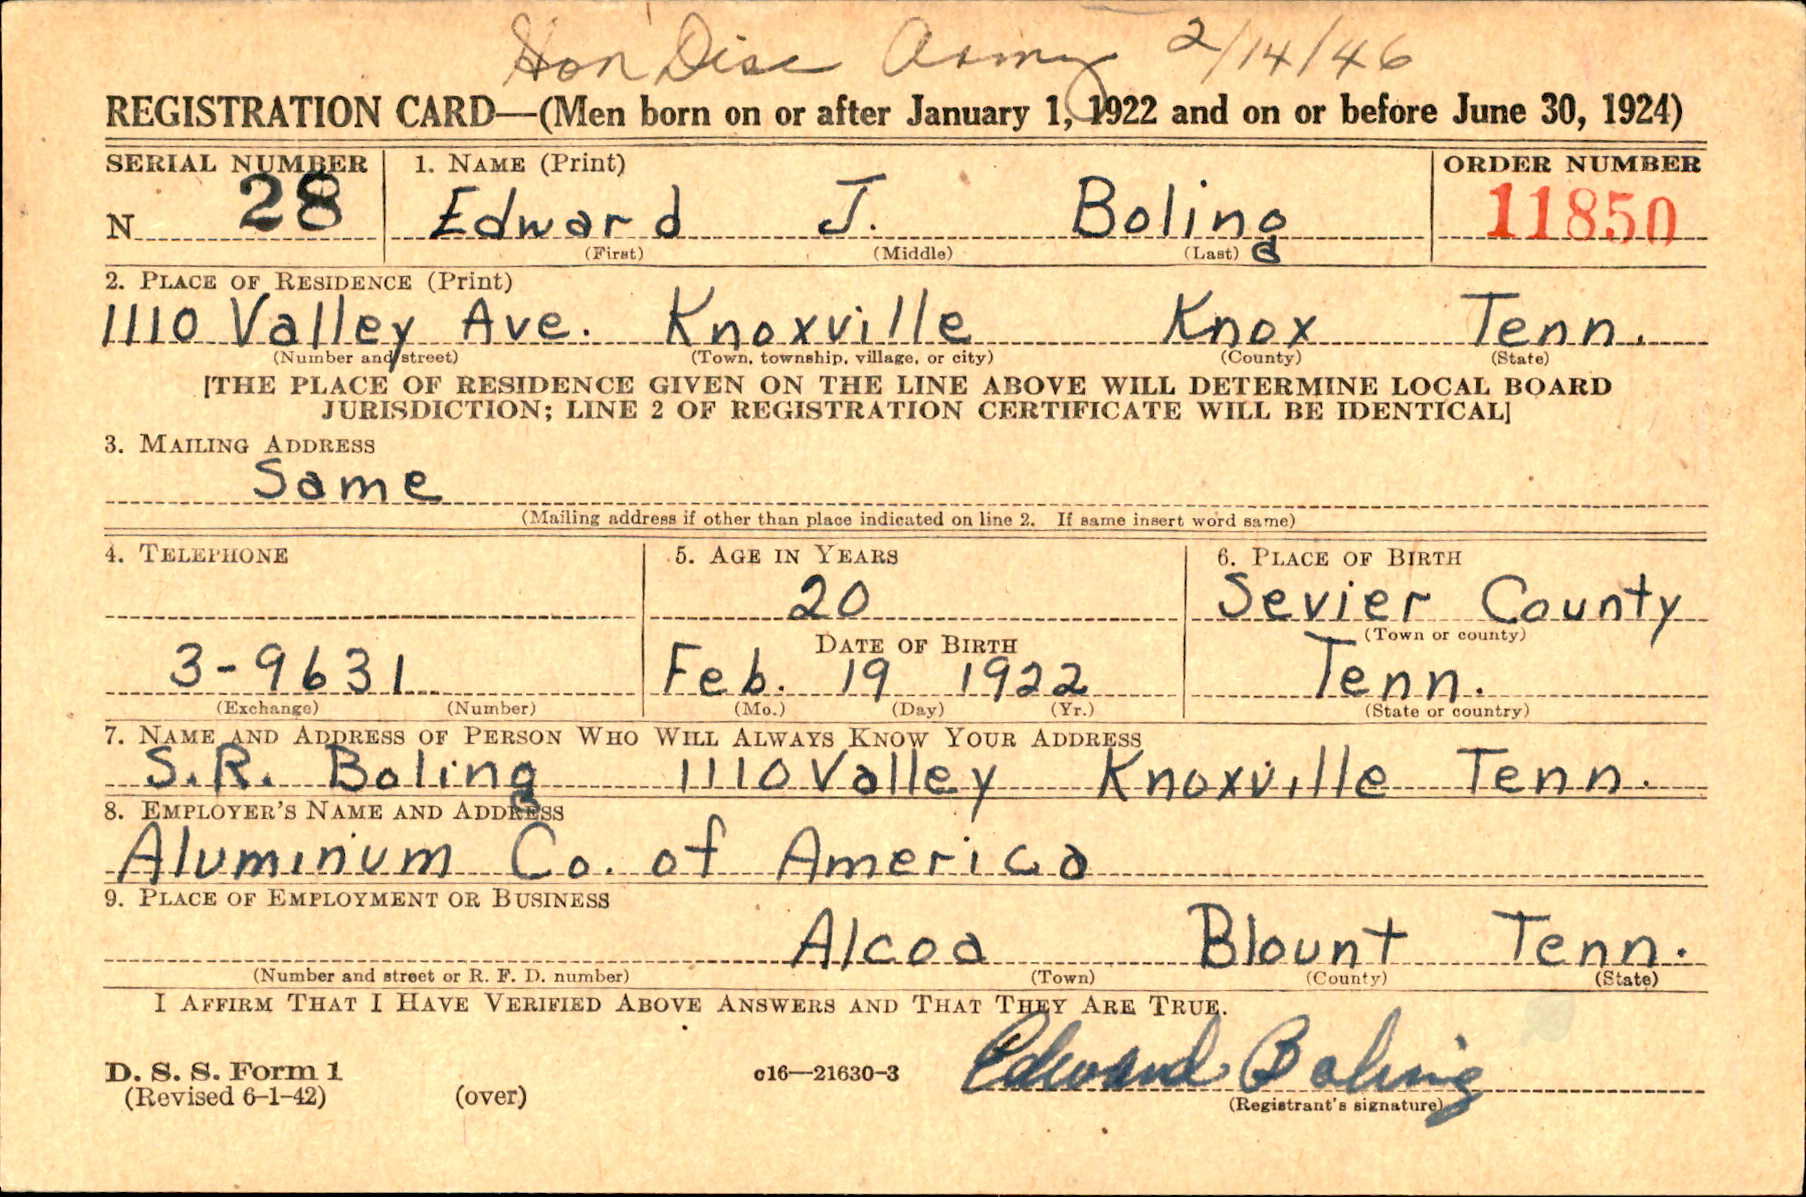 Edward Boling registration card, World War II